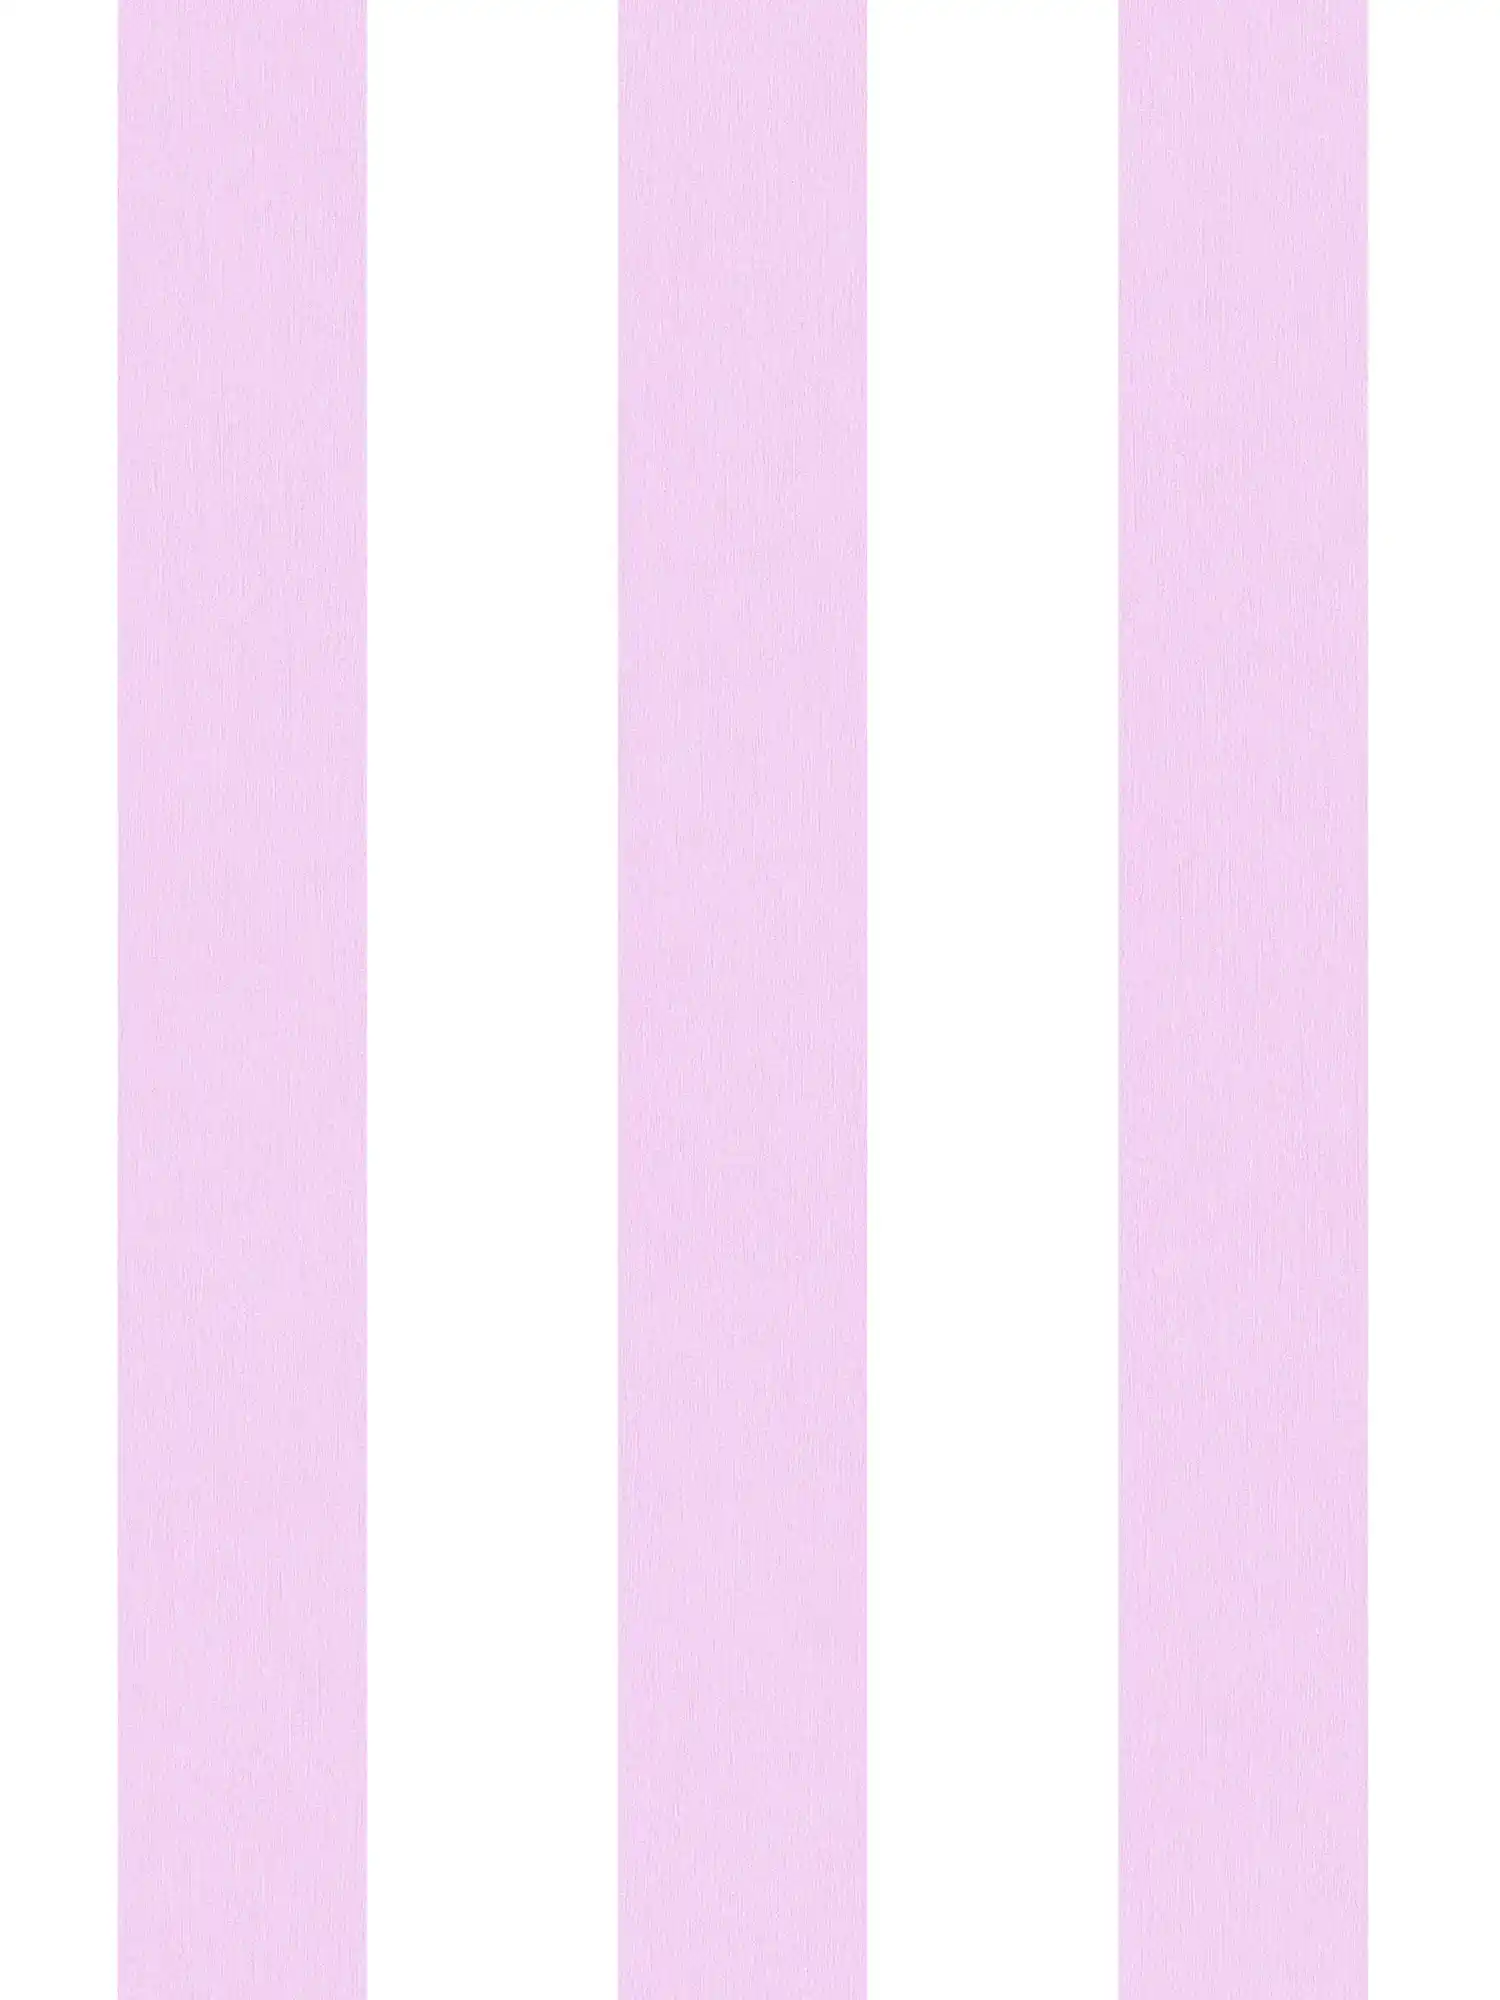 Behang kinderkamer meisjes verticale strepen - roze, wit
